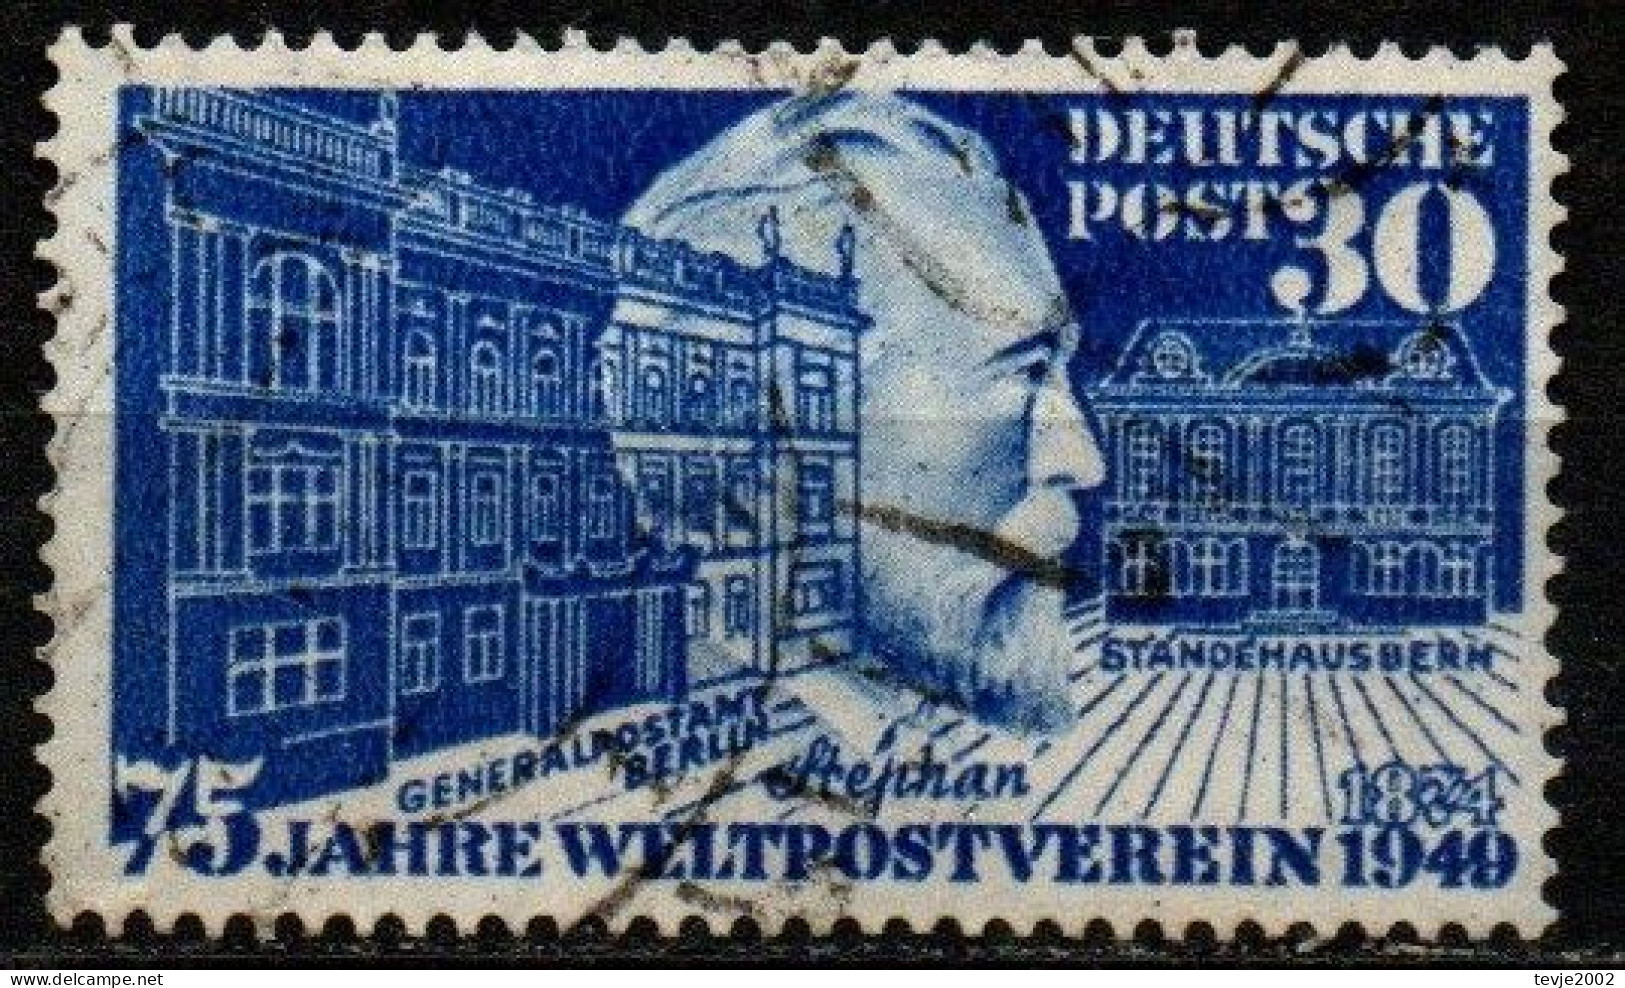 Bund 1949 - Mi.Nr. 116 - Gestempelt Used - Used Stamps